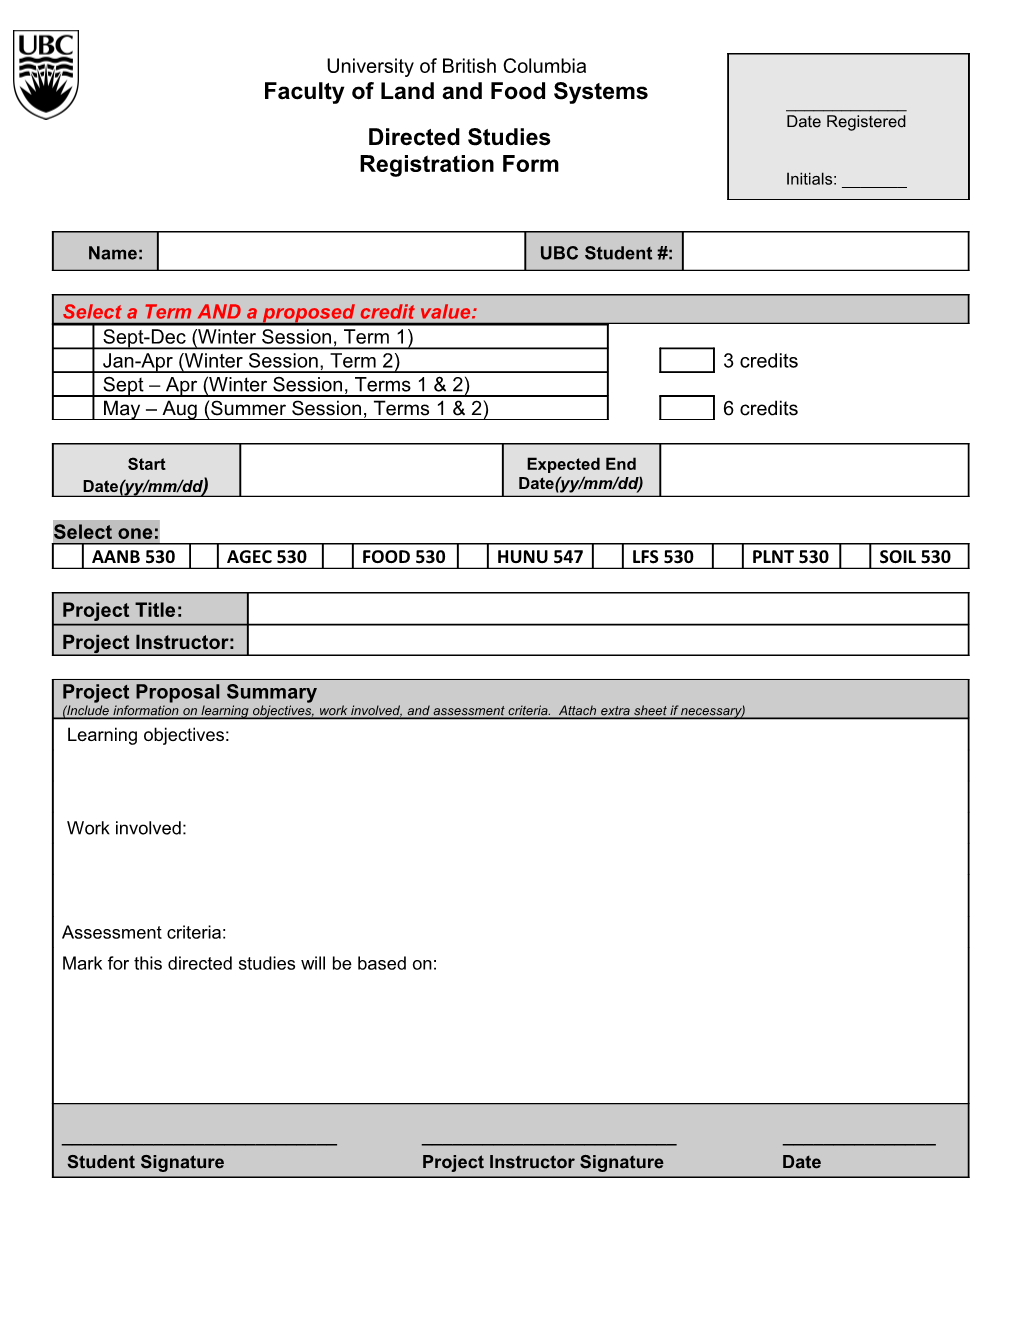 Directed Studies Registration Form